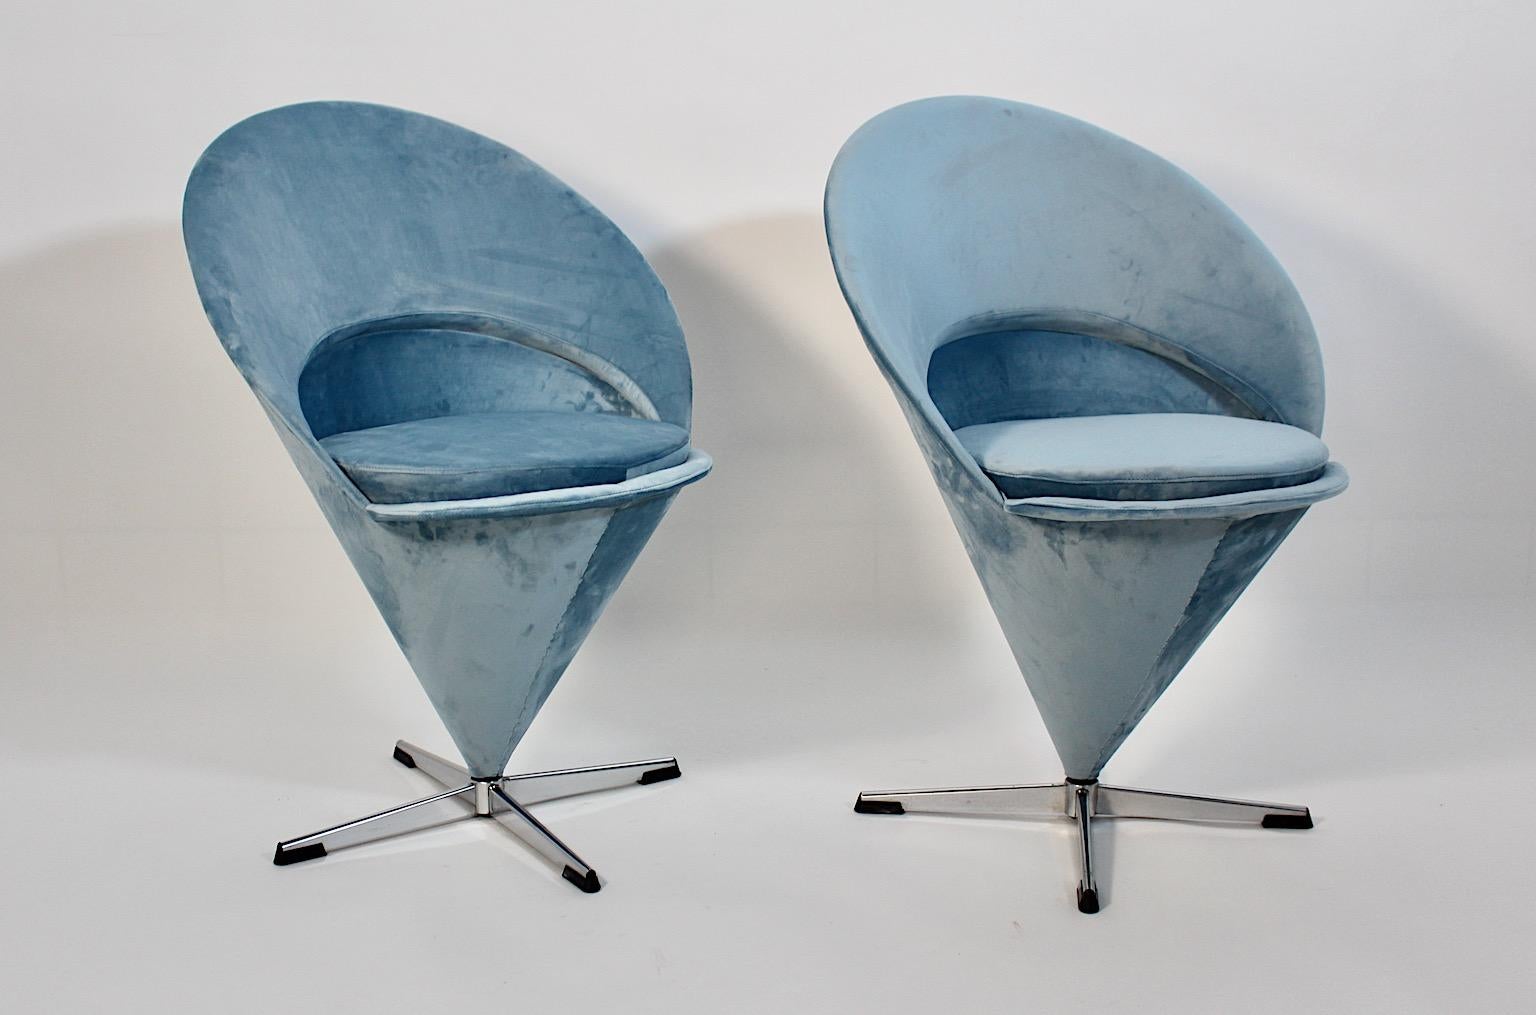 Ein atemberaubendes Paar oder Duo schwenkbarer Beistellstühle Modell Cone, entworfen von Verner Panton 1958, Dänemark.
Dieses Paar Kegelstühle ist neu mit pastellblauem Samtstoff bezogen und so zeigt das Duo insgesamt einen guten Zustand mit